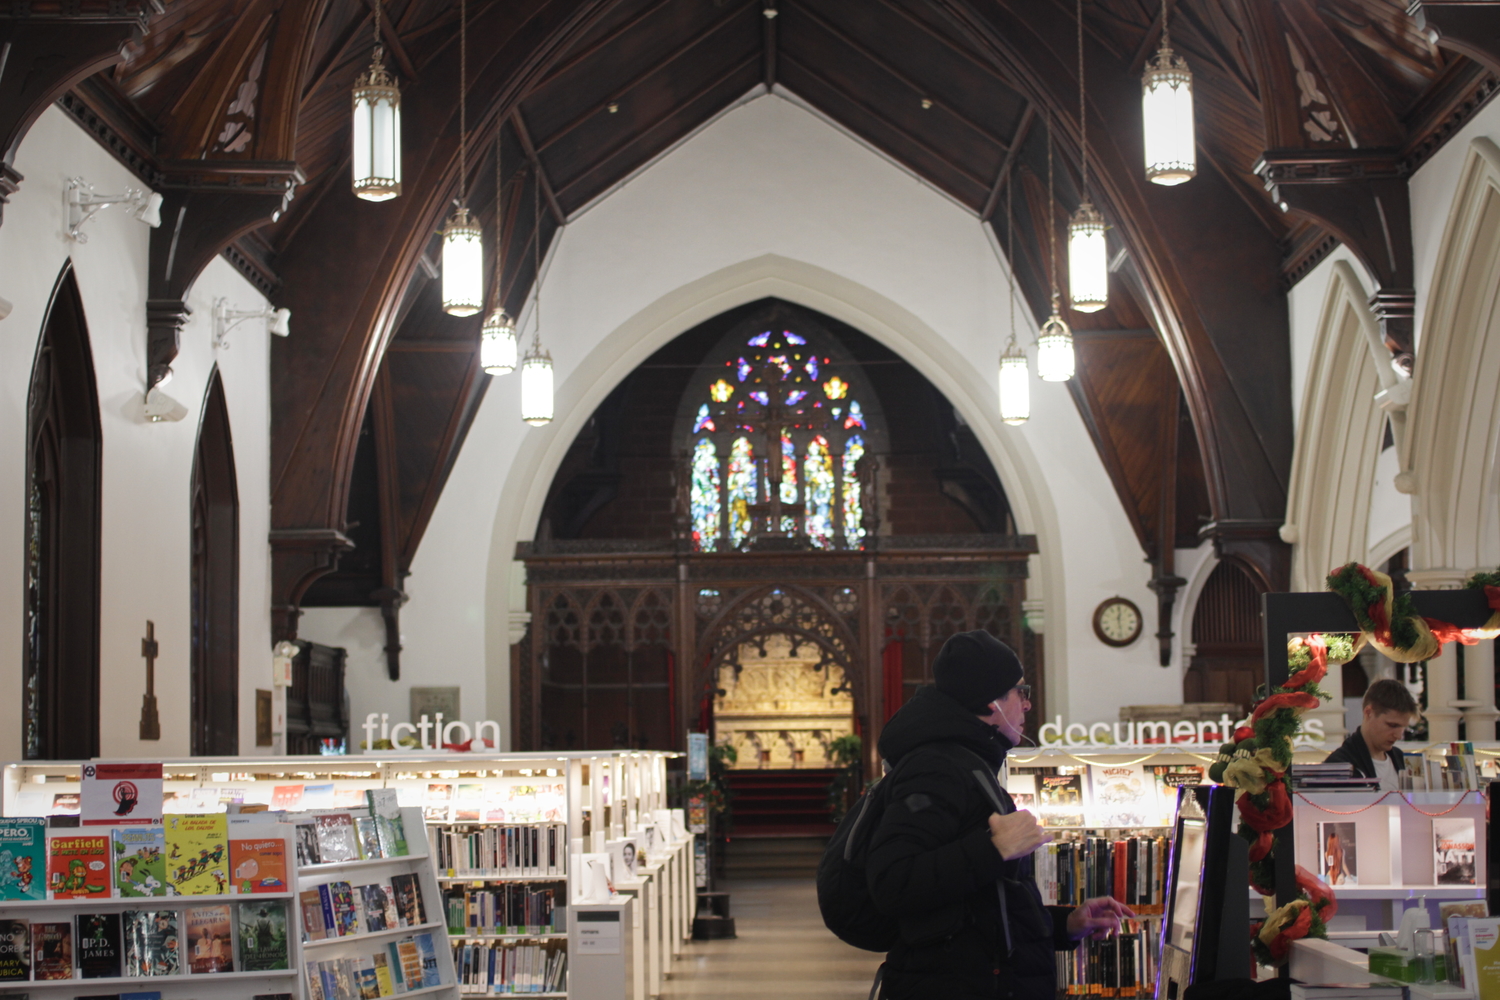 La bibliothèque Claire Martin est installée dans une église anglicane. De nombreuses églises sont transformées en lieux culturels à Québec.